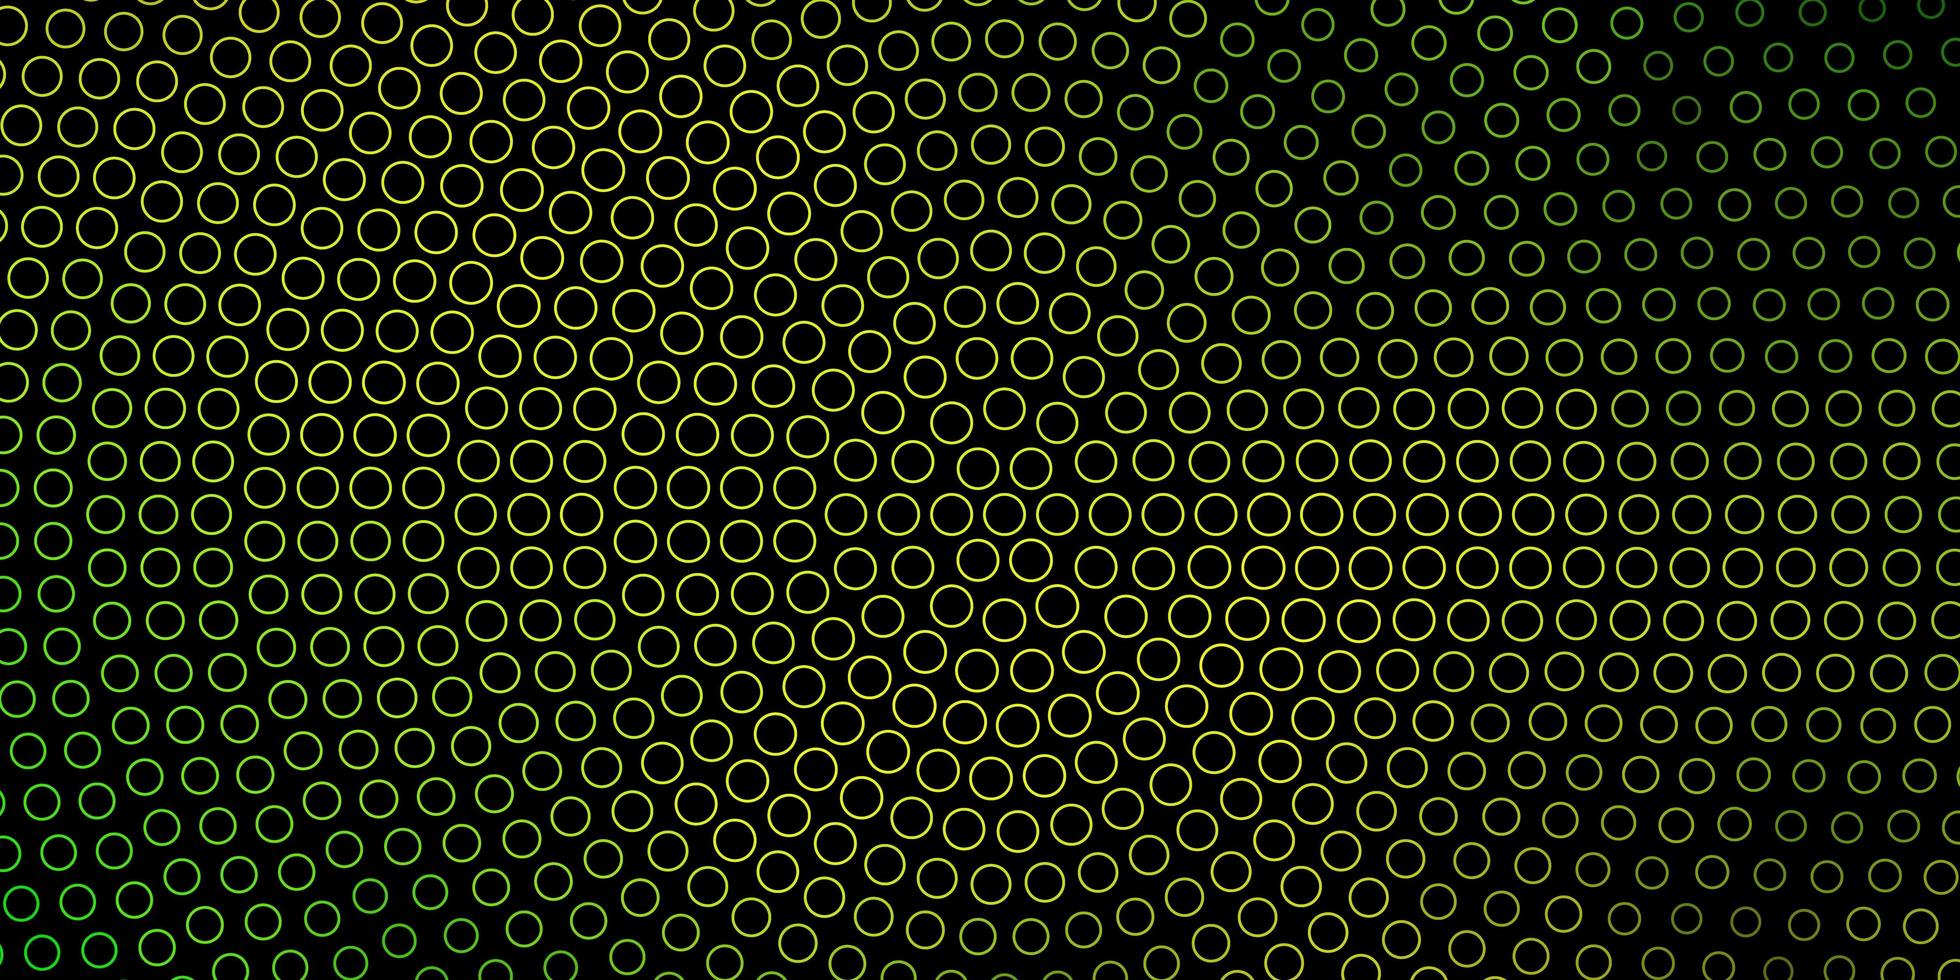 trama vettoriale verde scuro, giallo con cerchi.